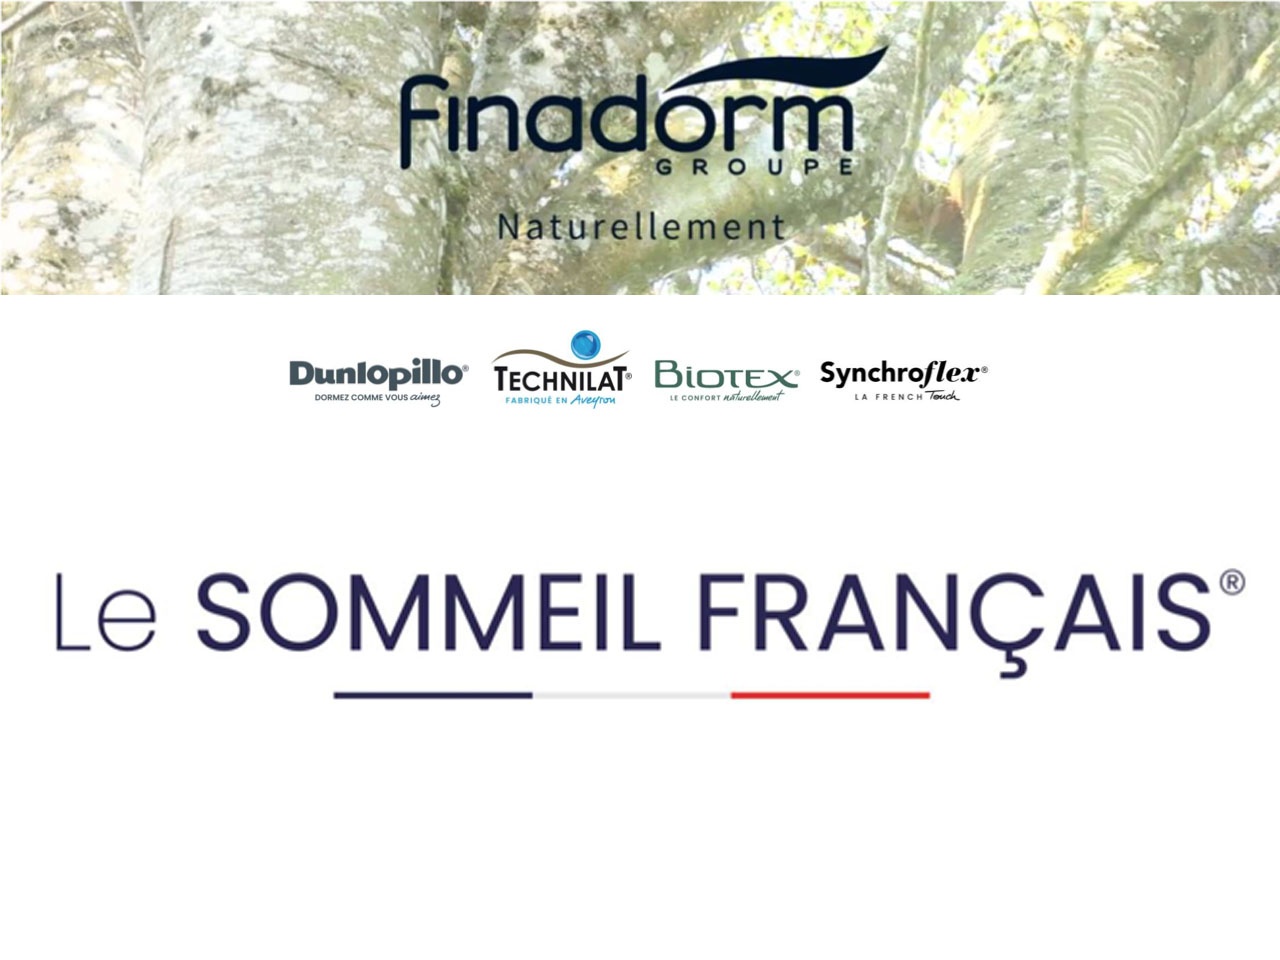 « Le Sommeil Français », la nouvelle entité du Groupe Finadorm